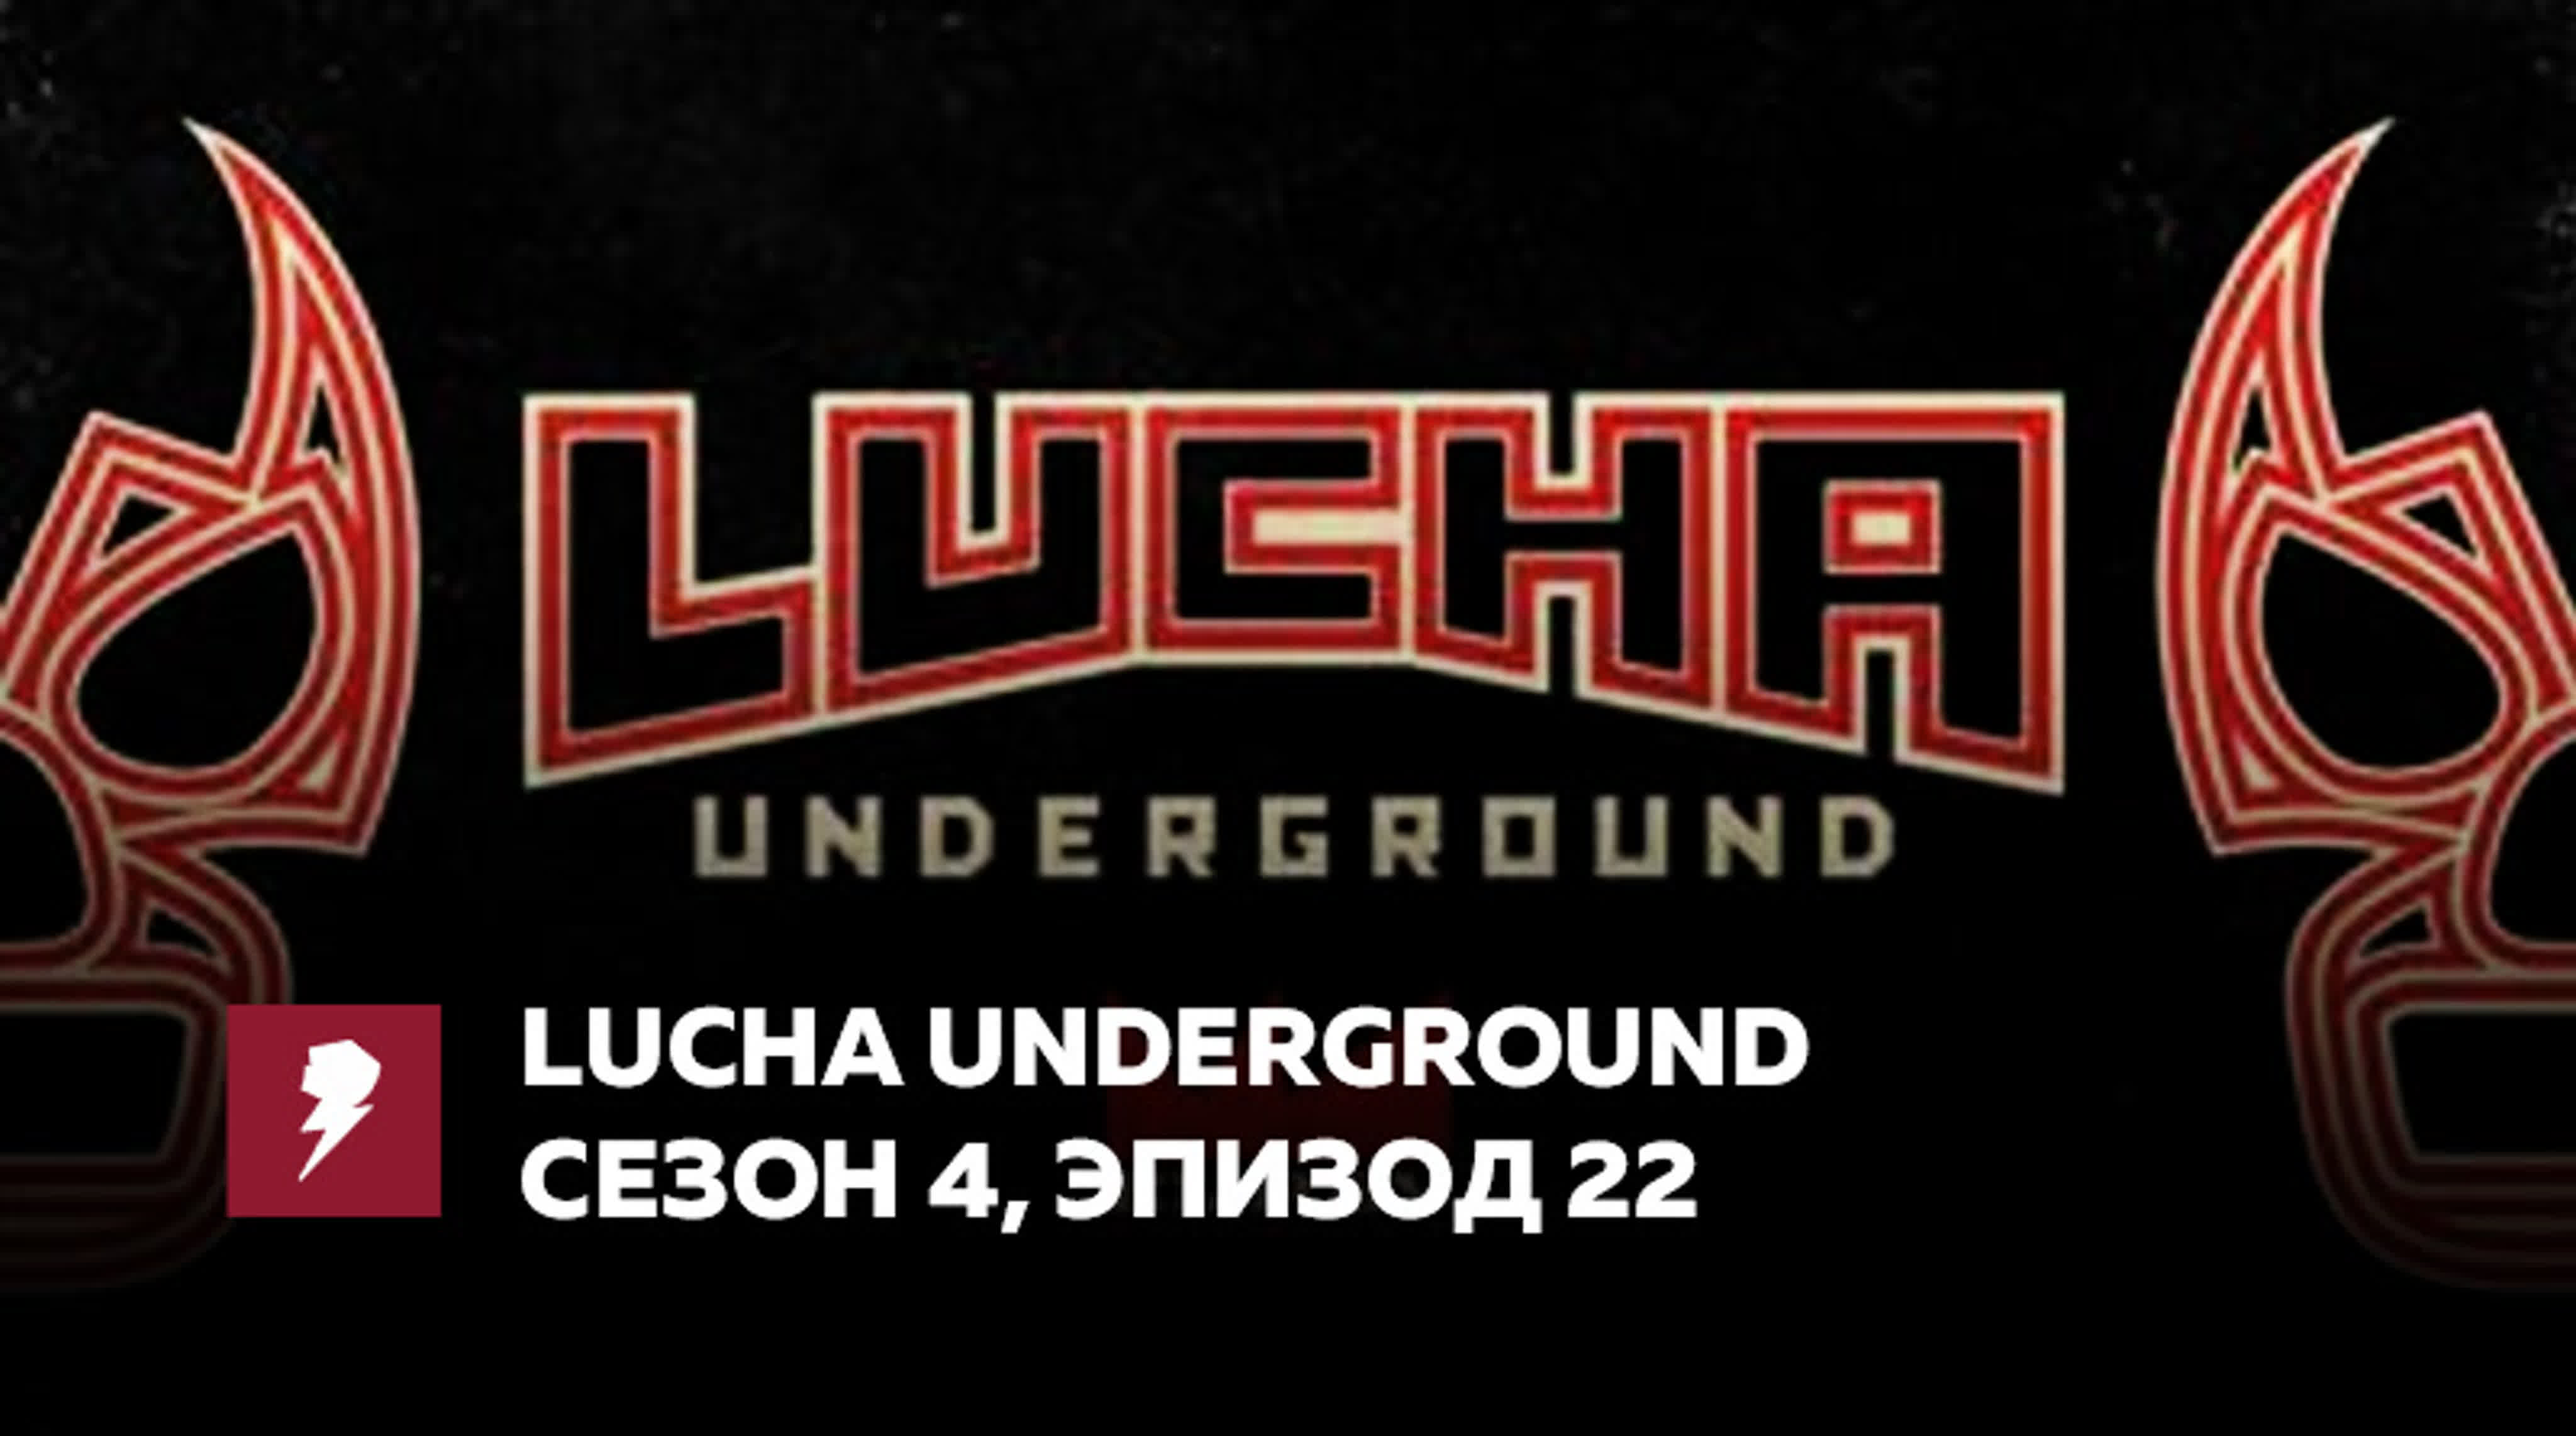 [#My1Event] Lucha Underground